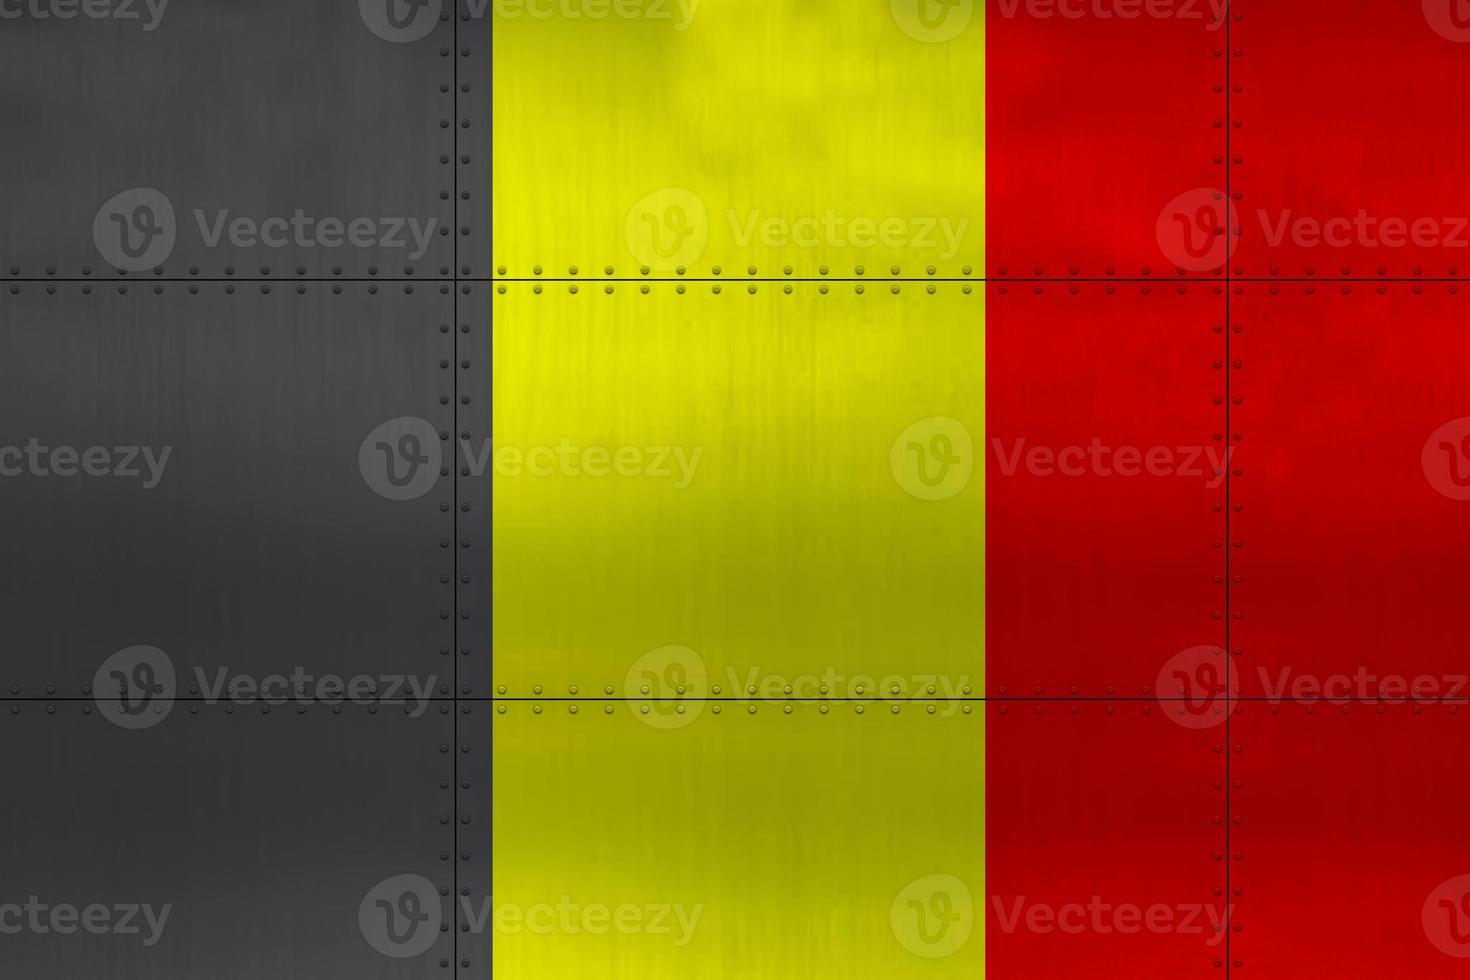 Belgiens flagga på metall foto